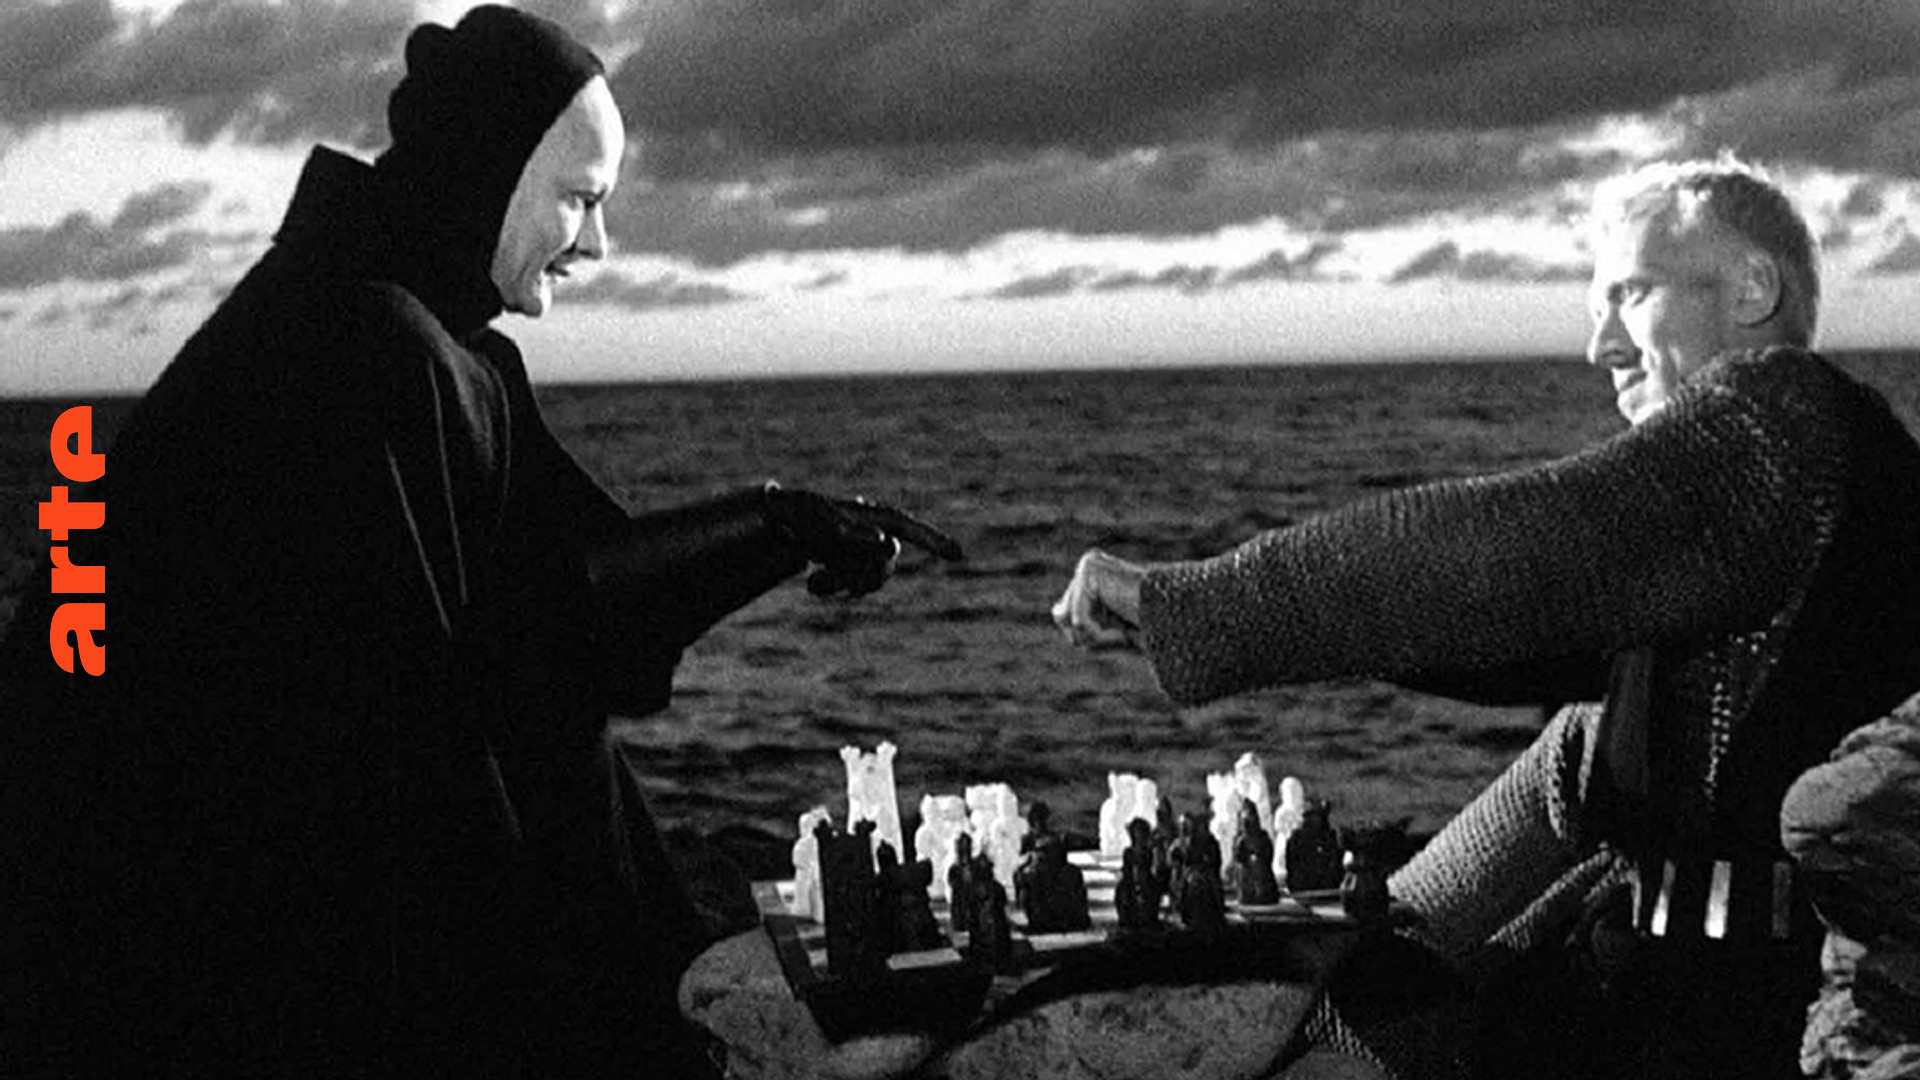 Blow up - Die Vor- und Abspanne von Ingmar Bergman